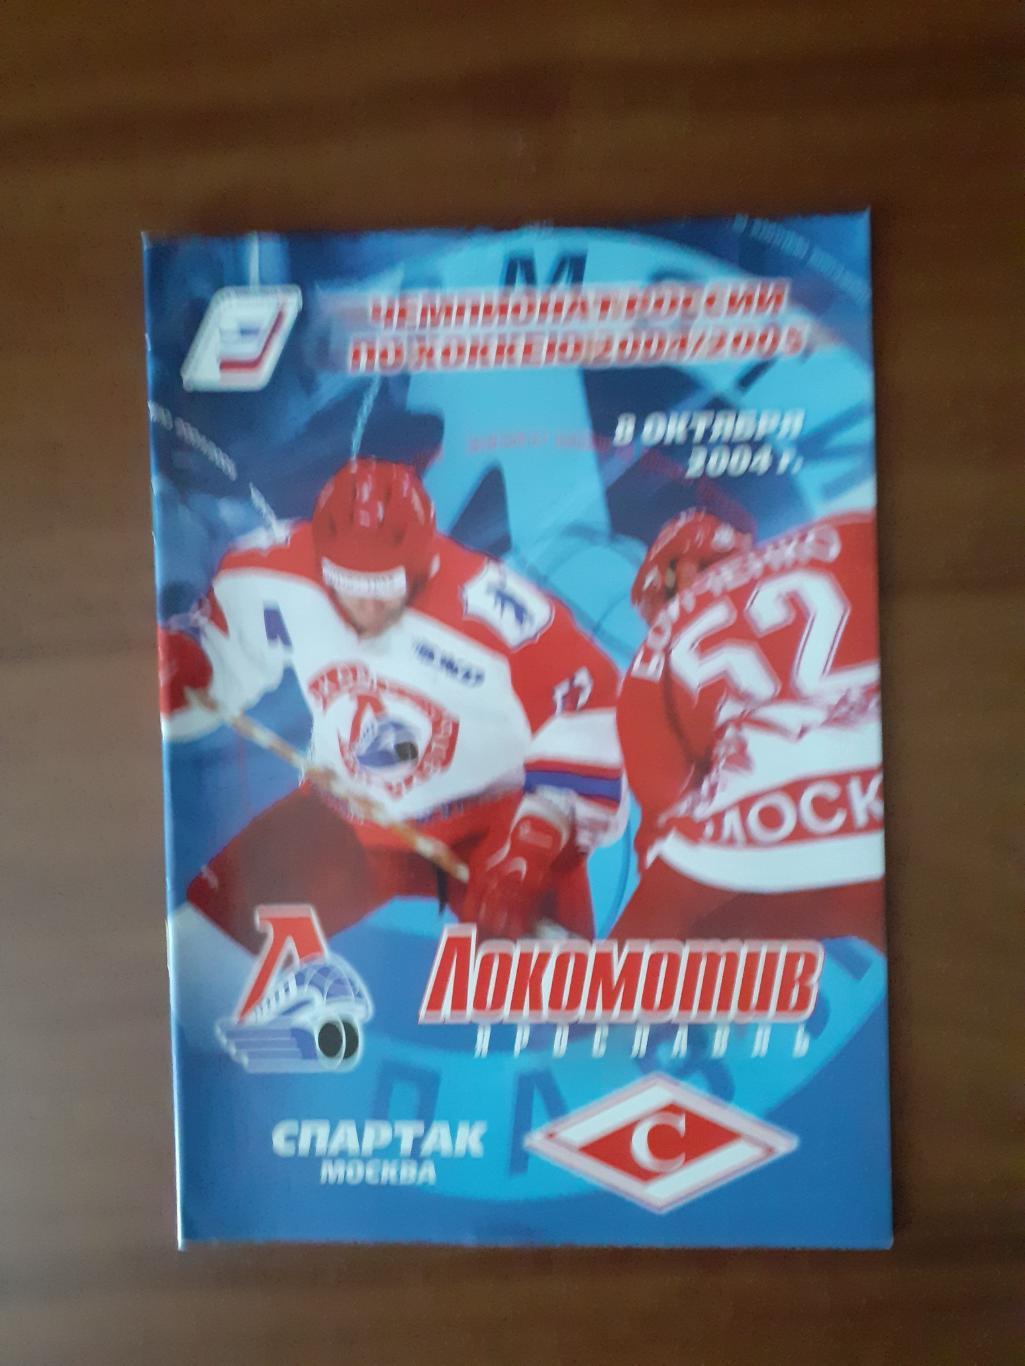 Локомотив Ярославль - Спартак Москва - 8 октября 2004г..